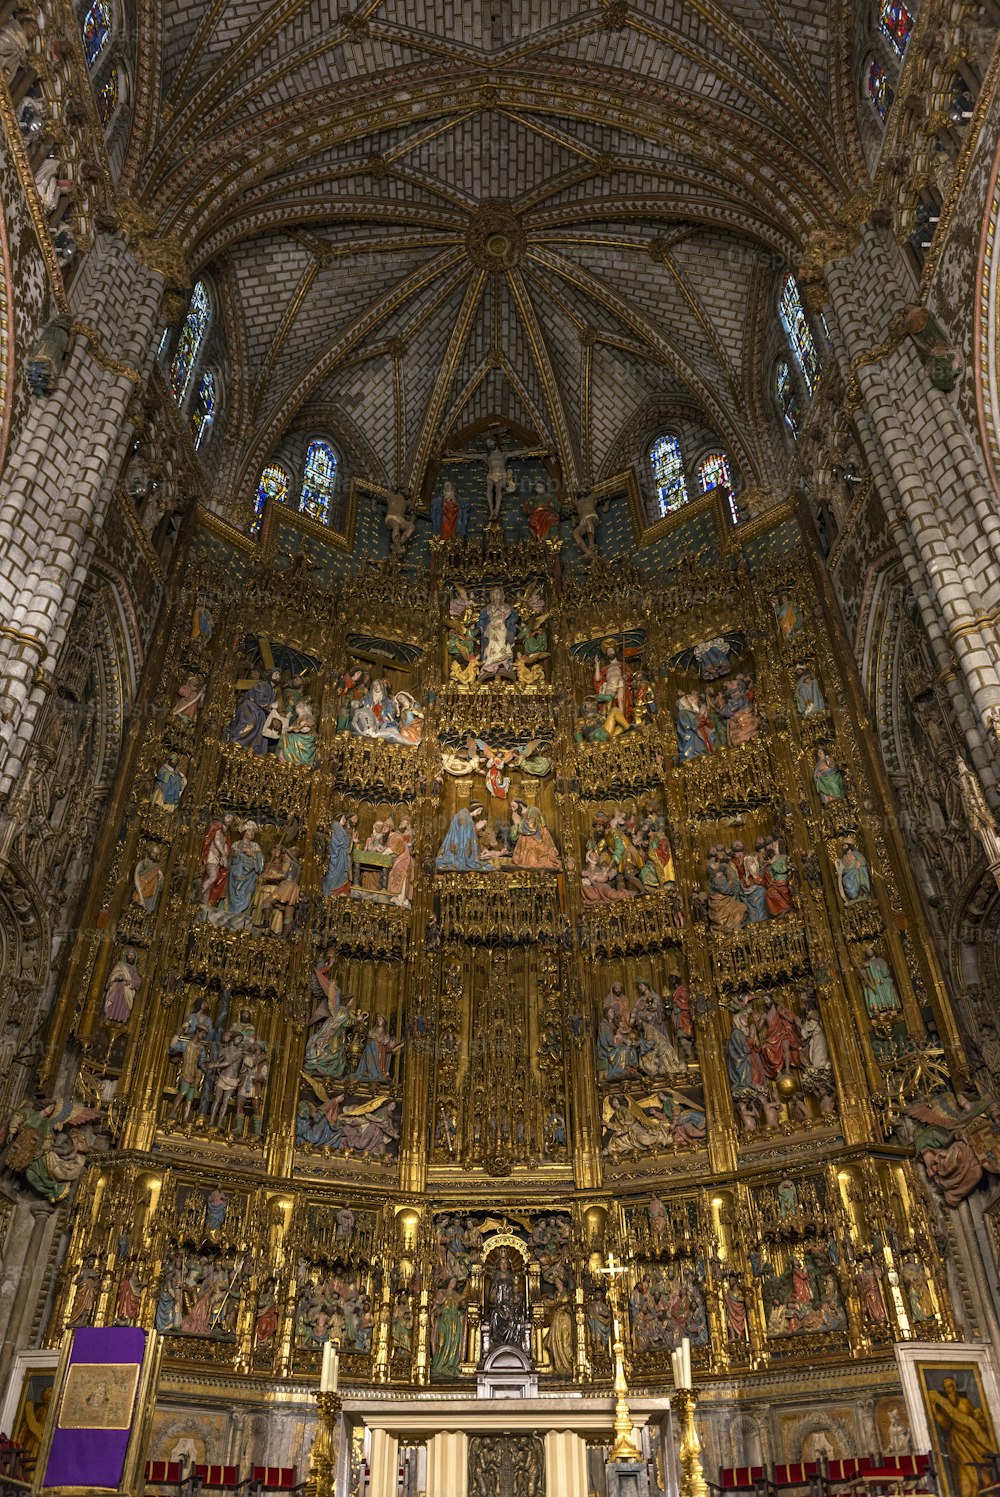 Vista interna do retábulo e altar-mor da Catedral de Toledo (Catedral Primaz de Santa Maria de Toledo), um retábulo gótico extremamente florido e um dos últimos exemplos deste estilo artístico. A catedral de Toledo é uma das três catedrais góticas do século 13 na Espanha e é considerada a magnum opus do estilo gótico na Espanha.